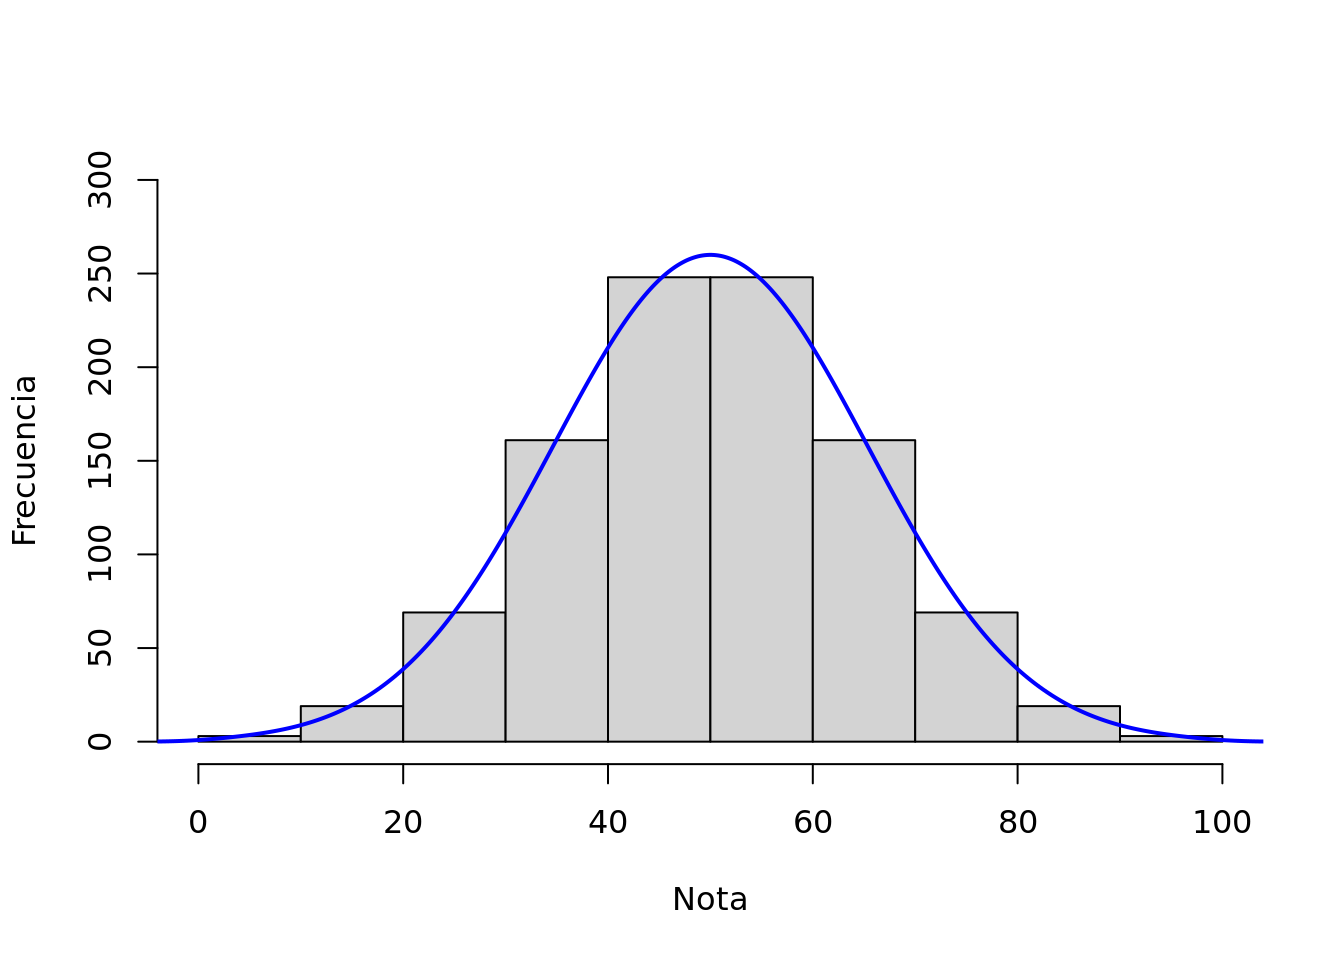 Muestra de notas de un test de matemática (N=1000)